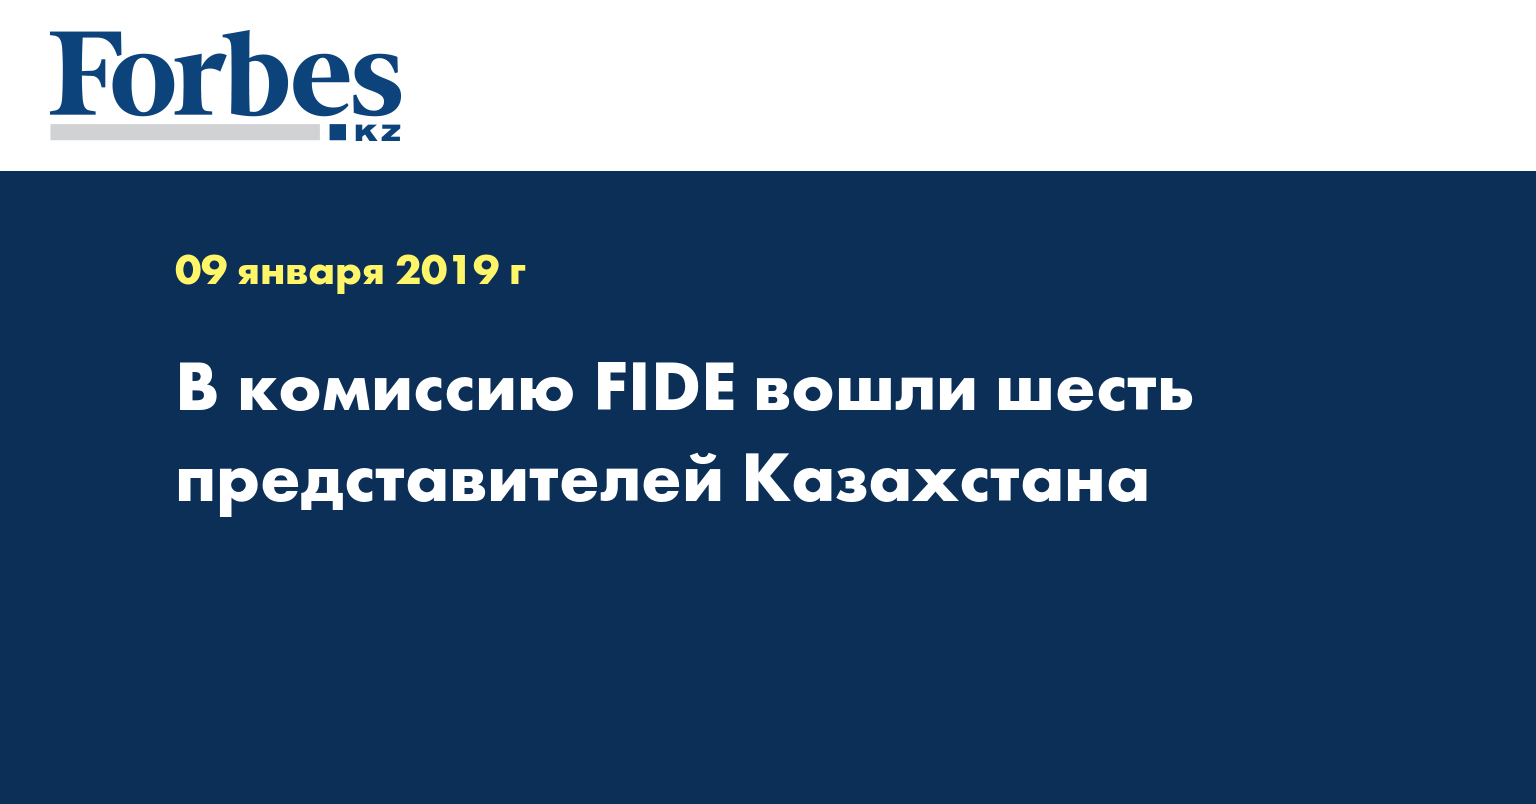 В комиссию FIDE вошли шесть представителей Казахстана